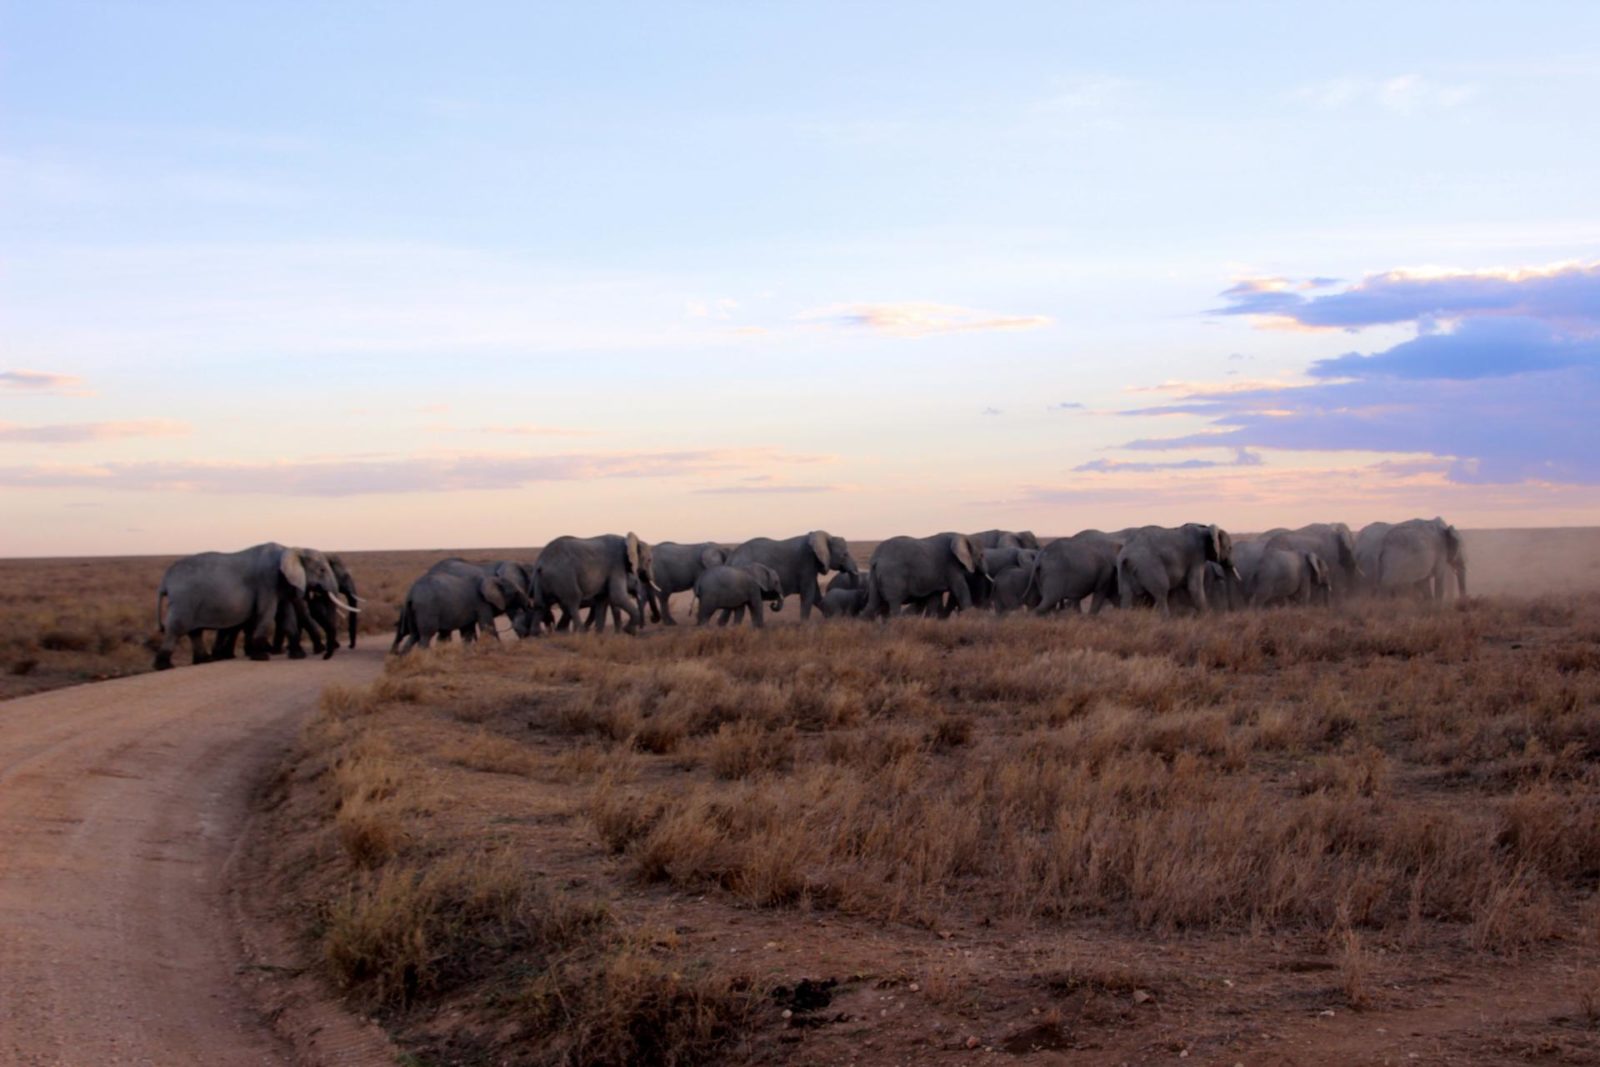 Top Tips for Epic Safari Photos